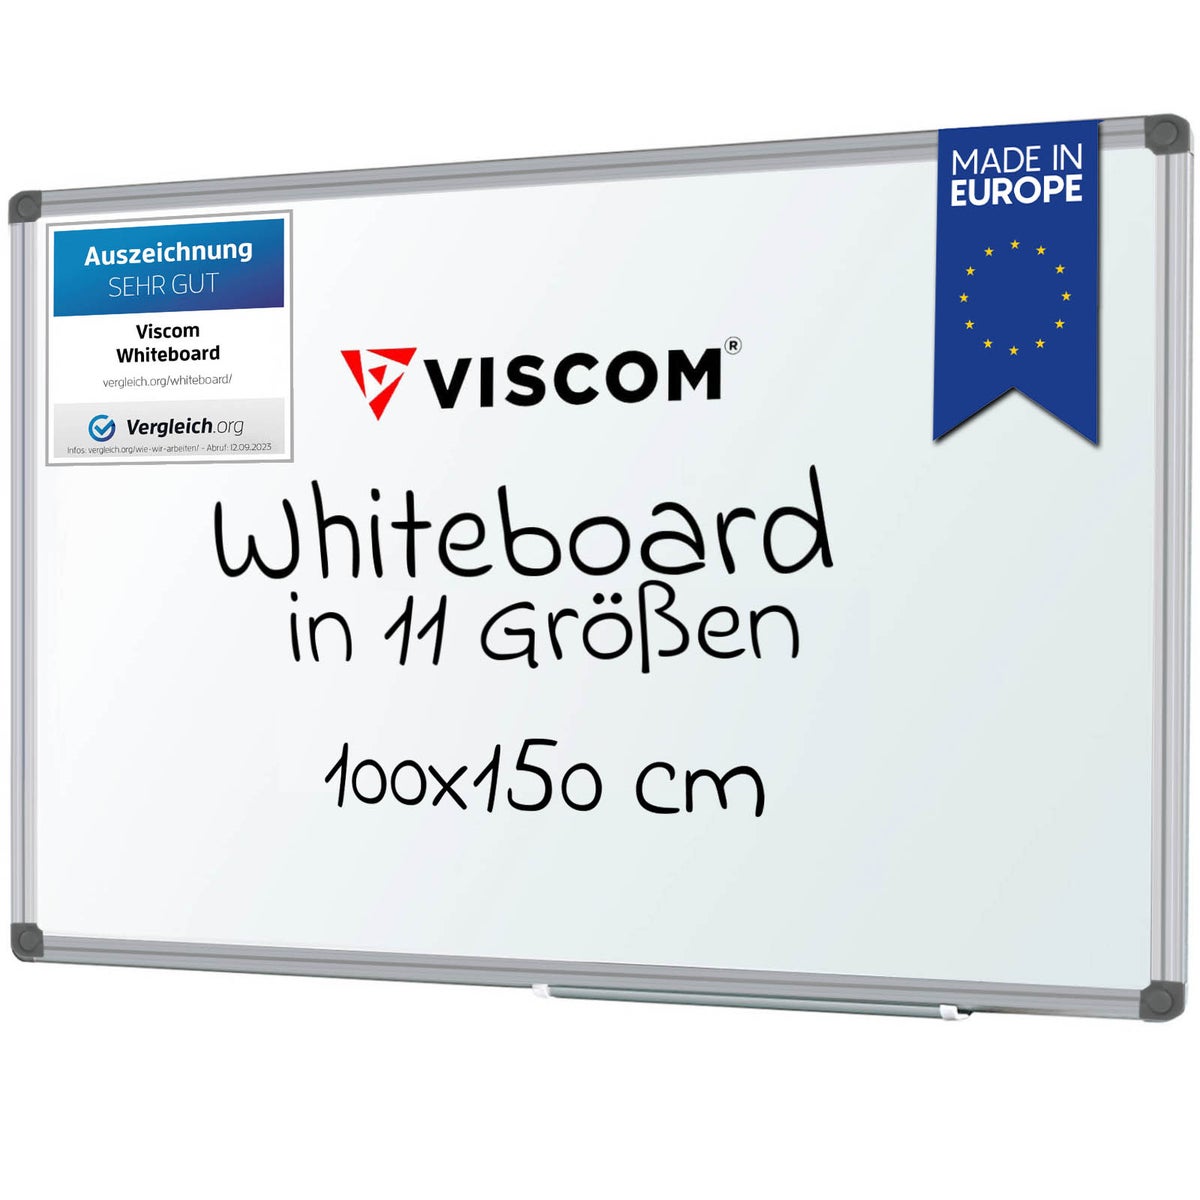 VISCOM Whiteboard magnetisch - 100 x 150 cm - Magnettafel für Büro & Zuhause - Magnetwand, kratzfest & beschreibbar - mit Aluminium-Rahmen - für Hoch- und Querformat